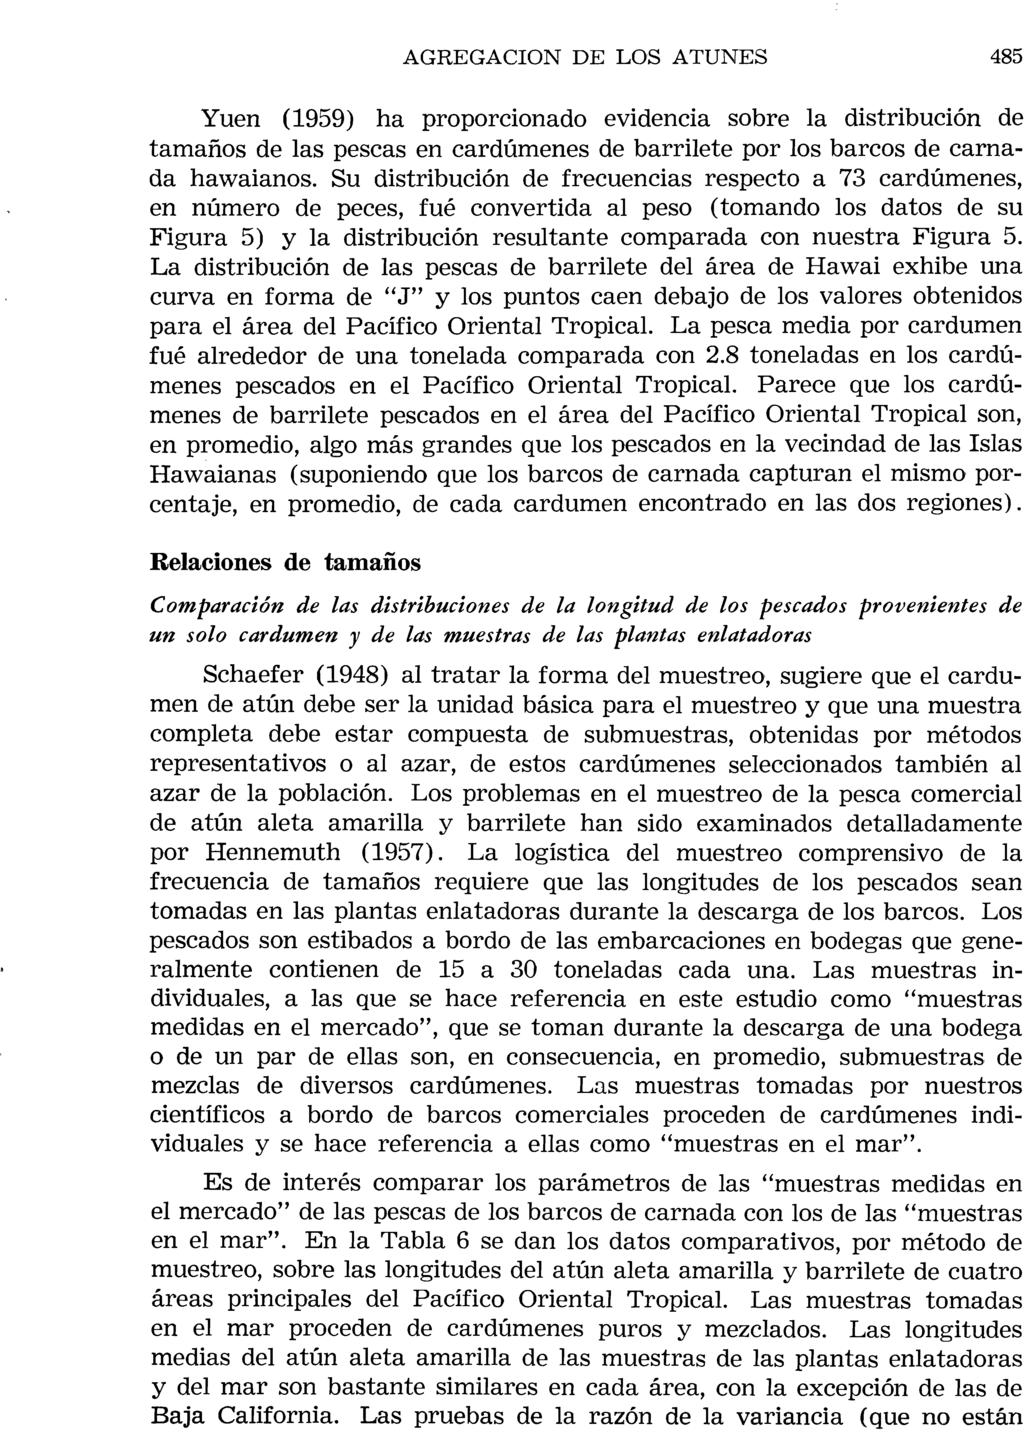 AGREGACION DE LOS ATUNES 485 Yuen (1959) ha proporcionado evidel1cia evidencia sobre la distribución distribuci6n de tamaños tamafios de las pescas en cardúmenes cardumenes de barrilete por los